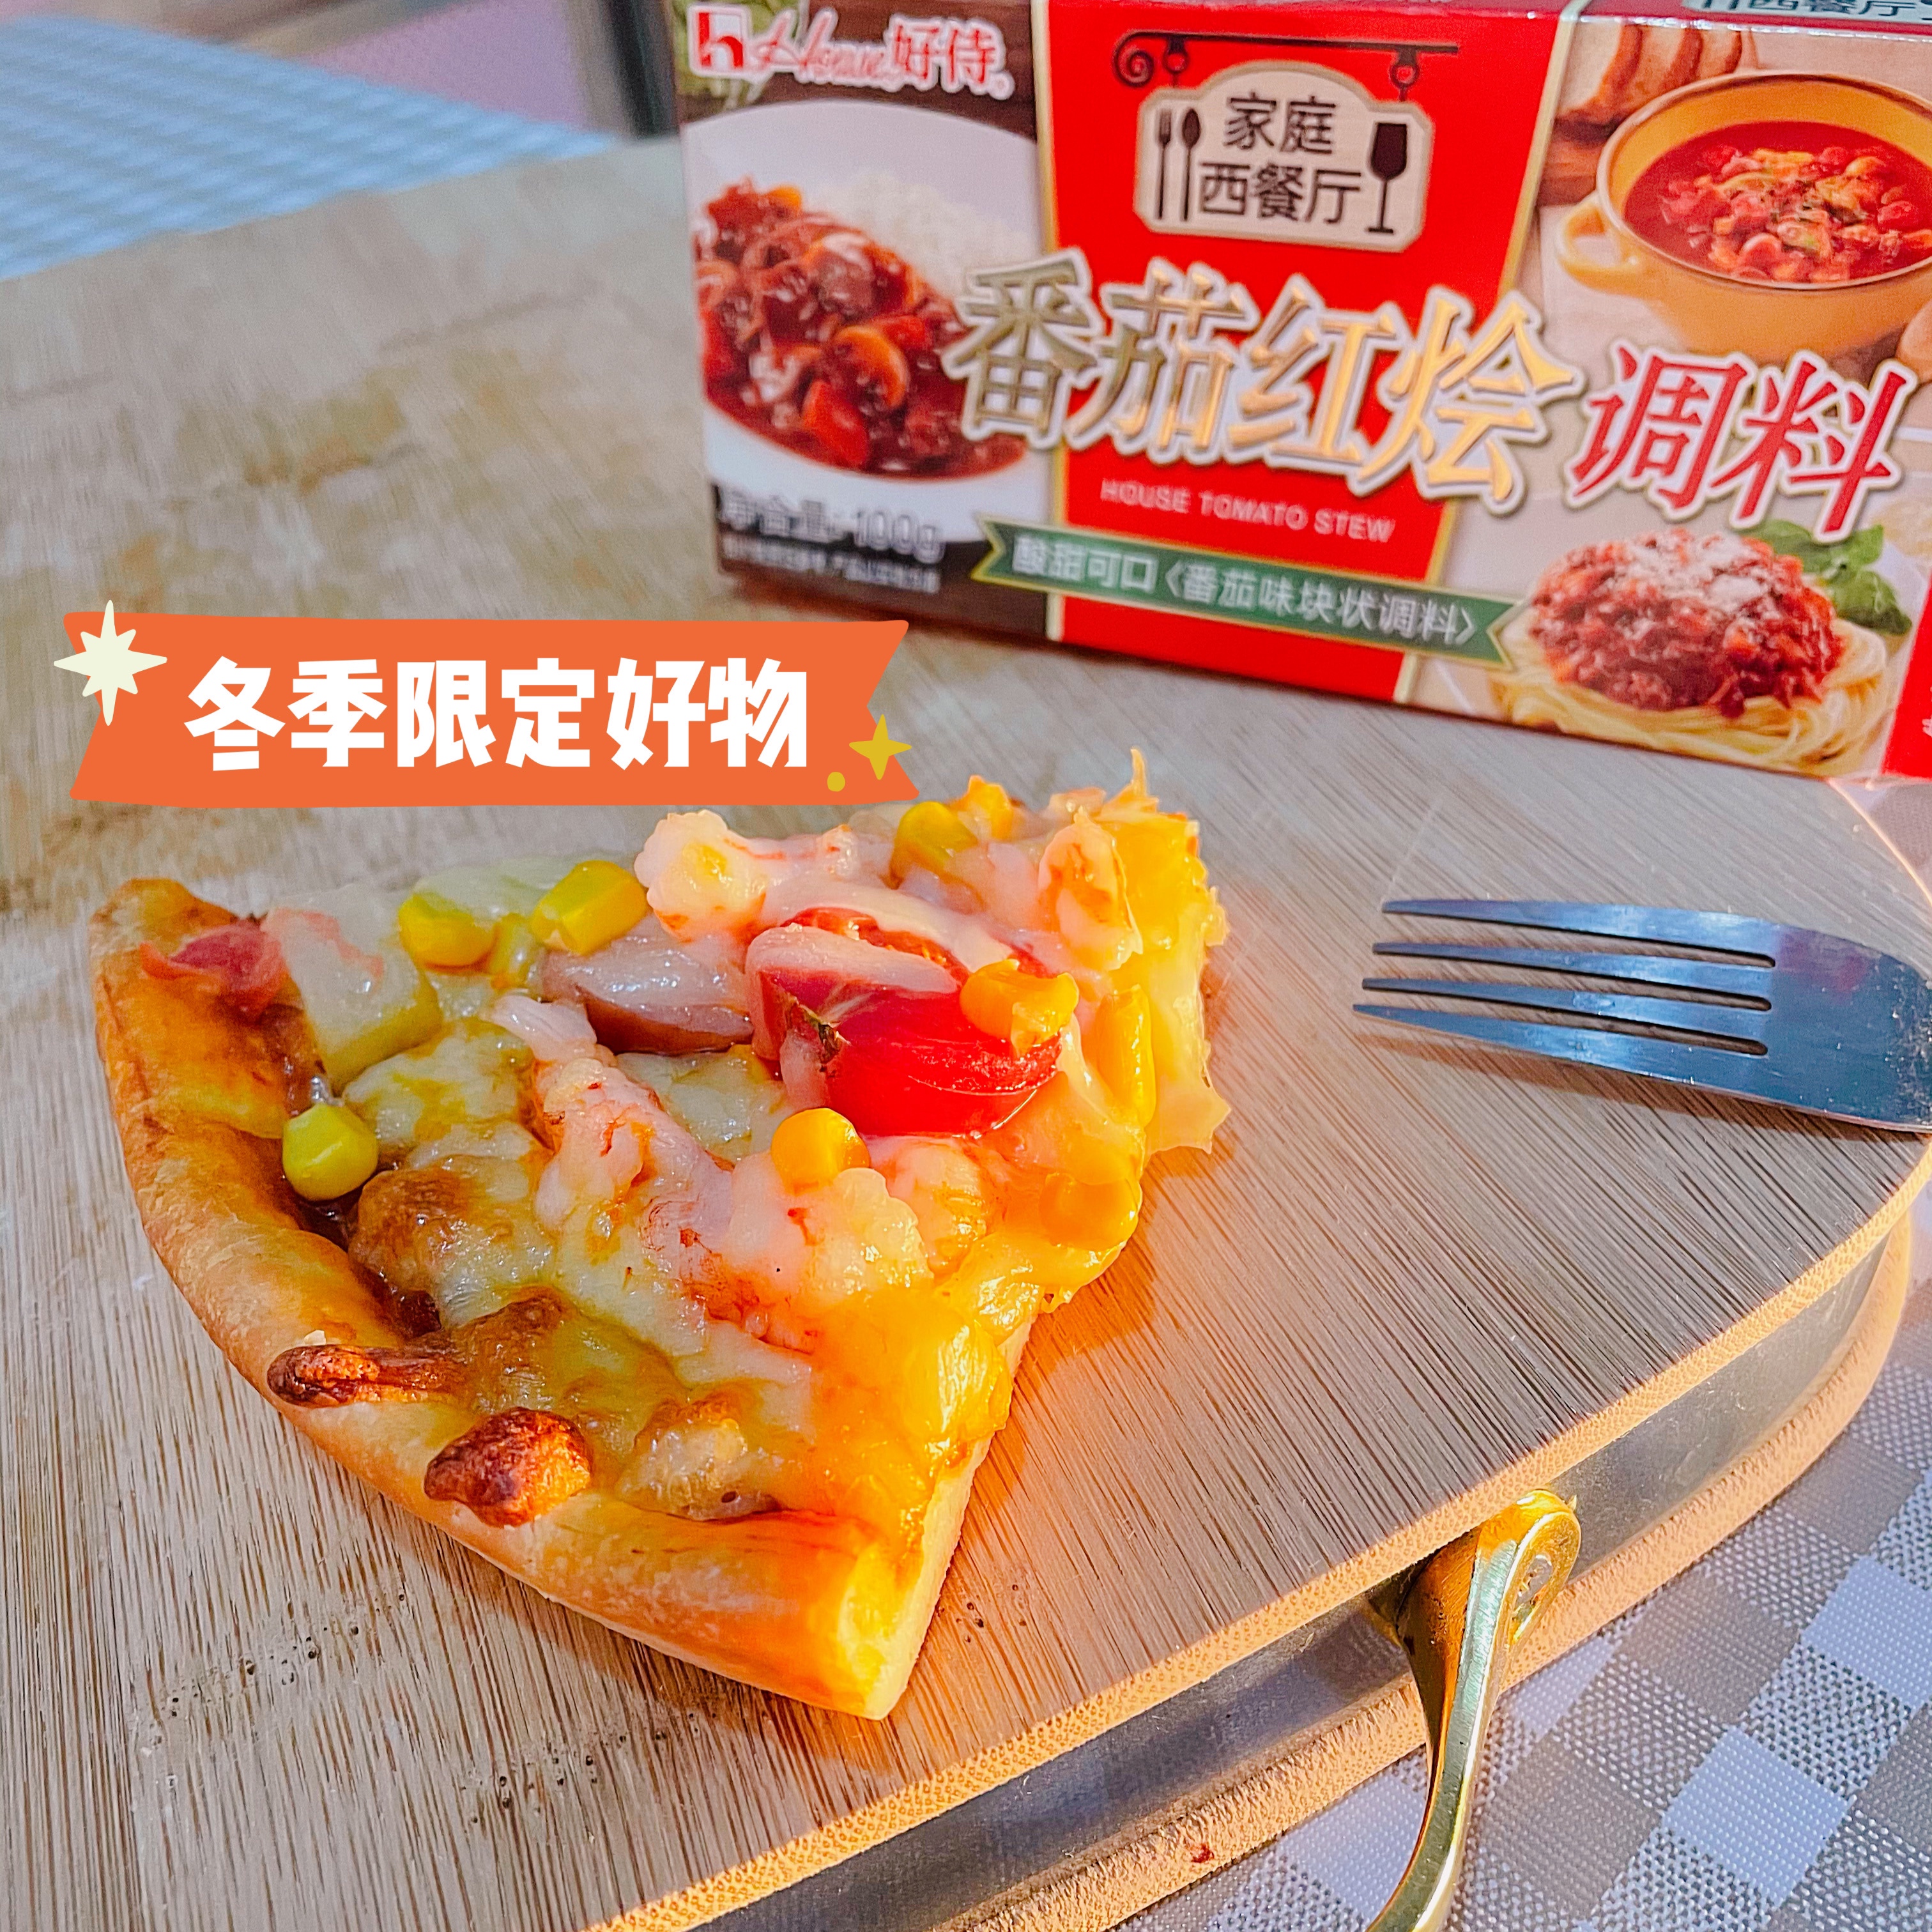 番茄红烩披萨【好侍番茄红烩调味块】的做法